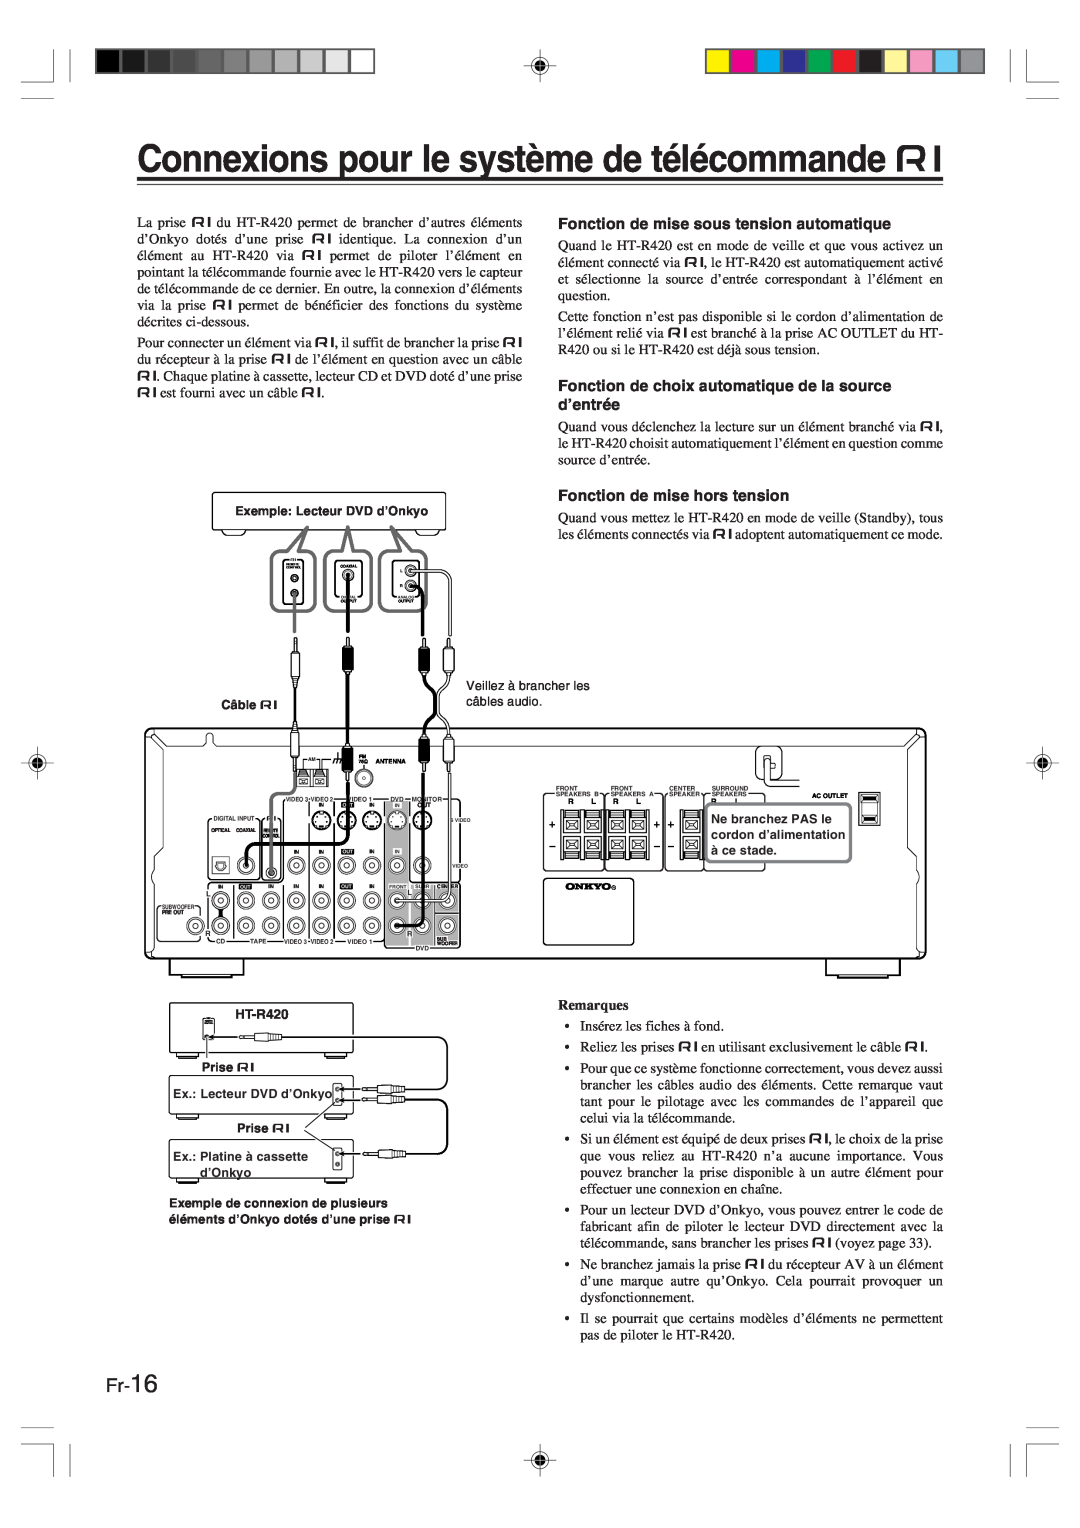 Onkyo HT-R420 manual Connexions pour le système de télécommande z, Fr-16, Remarques 